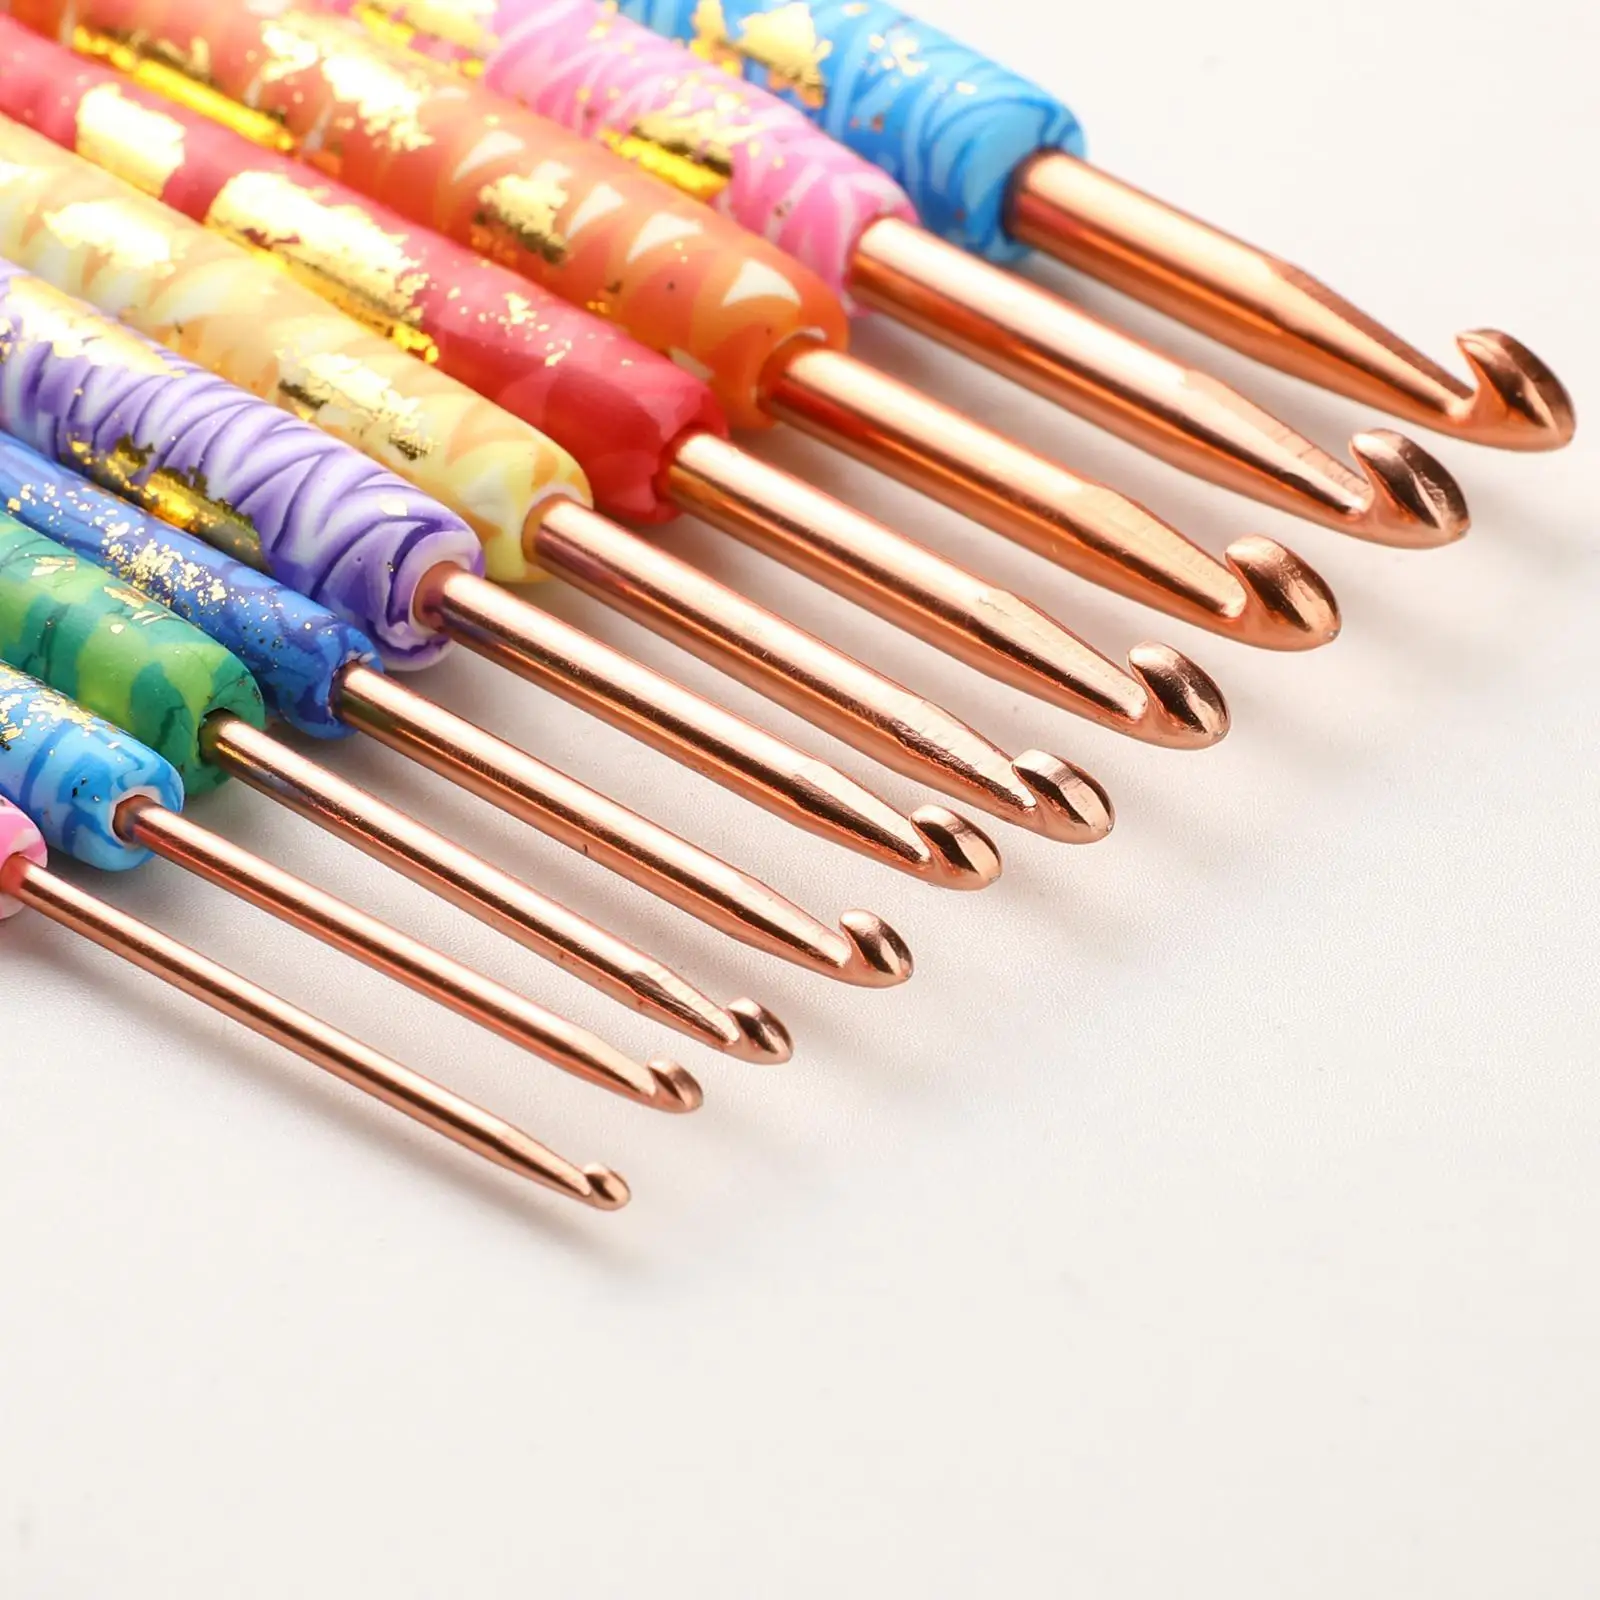 

2 10X художественные Алюминиевые крючки для вязания, вязальные спицы, инструменты для шитья и рукоделия, товары